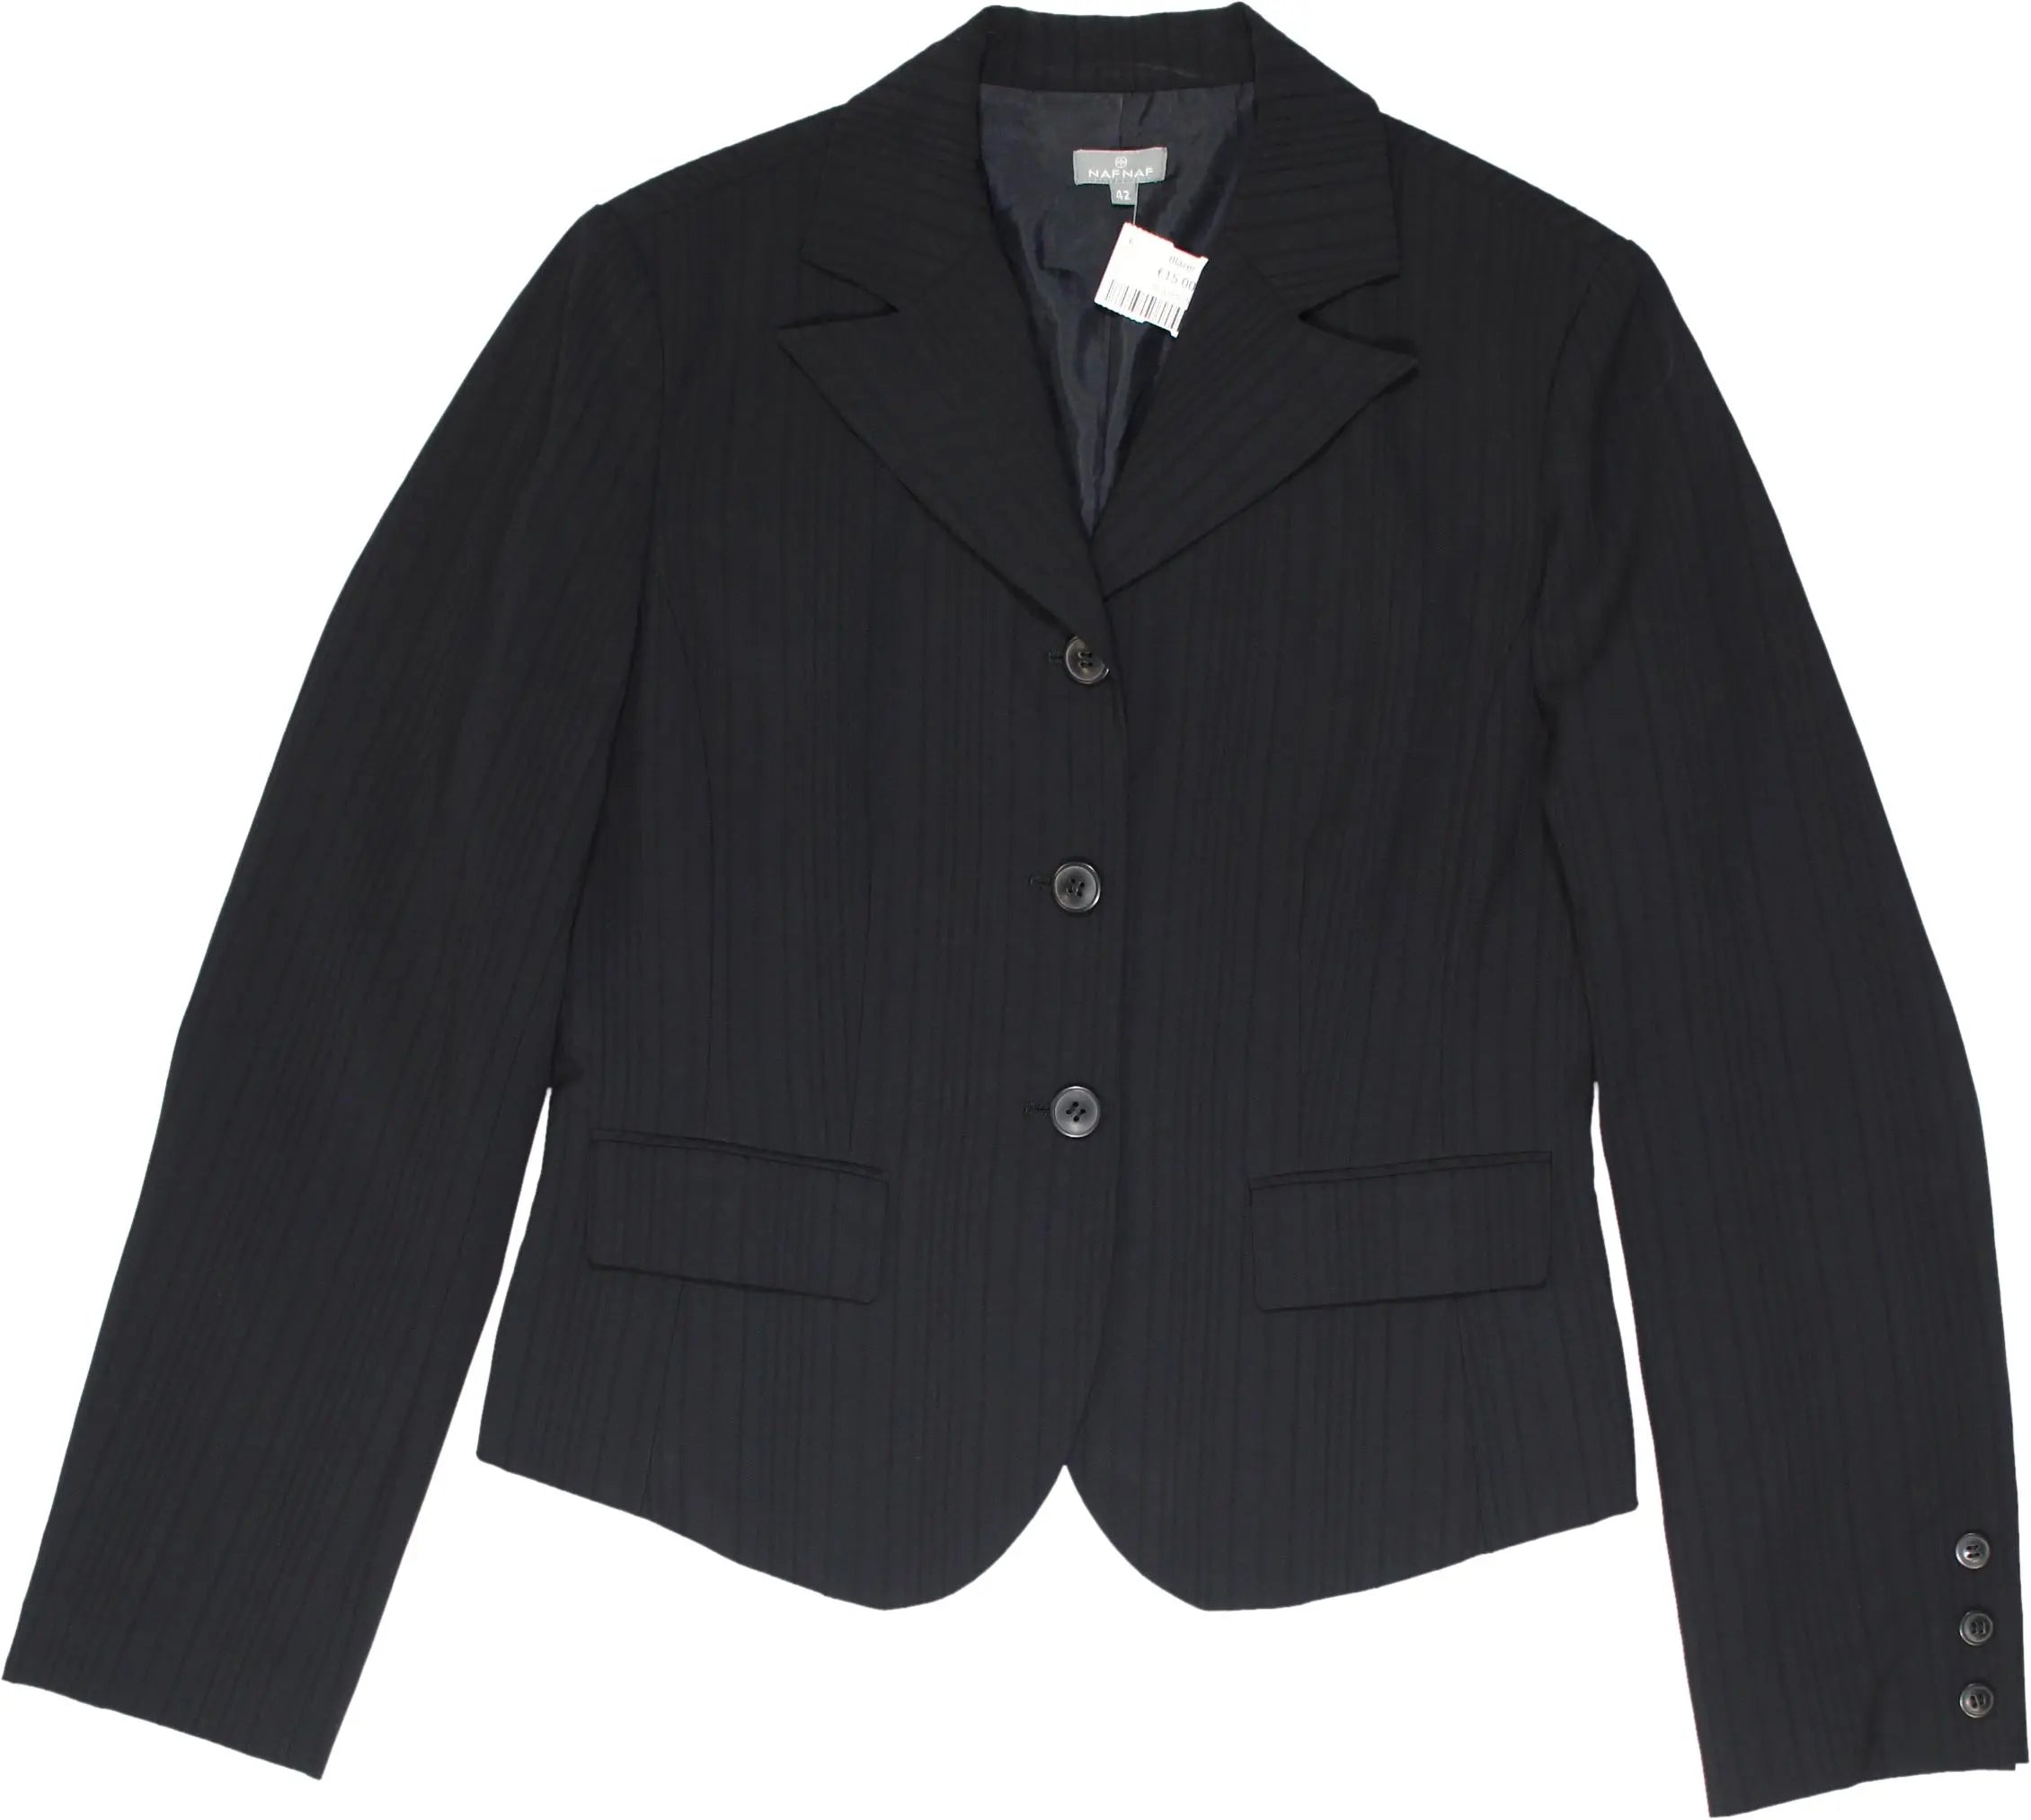 Naf Naf - Black blazer- ThriftTale.com - Vintage and second handclothing